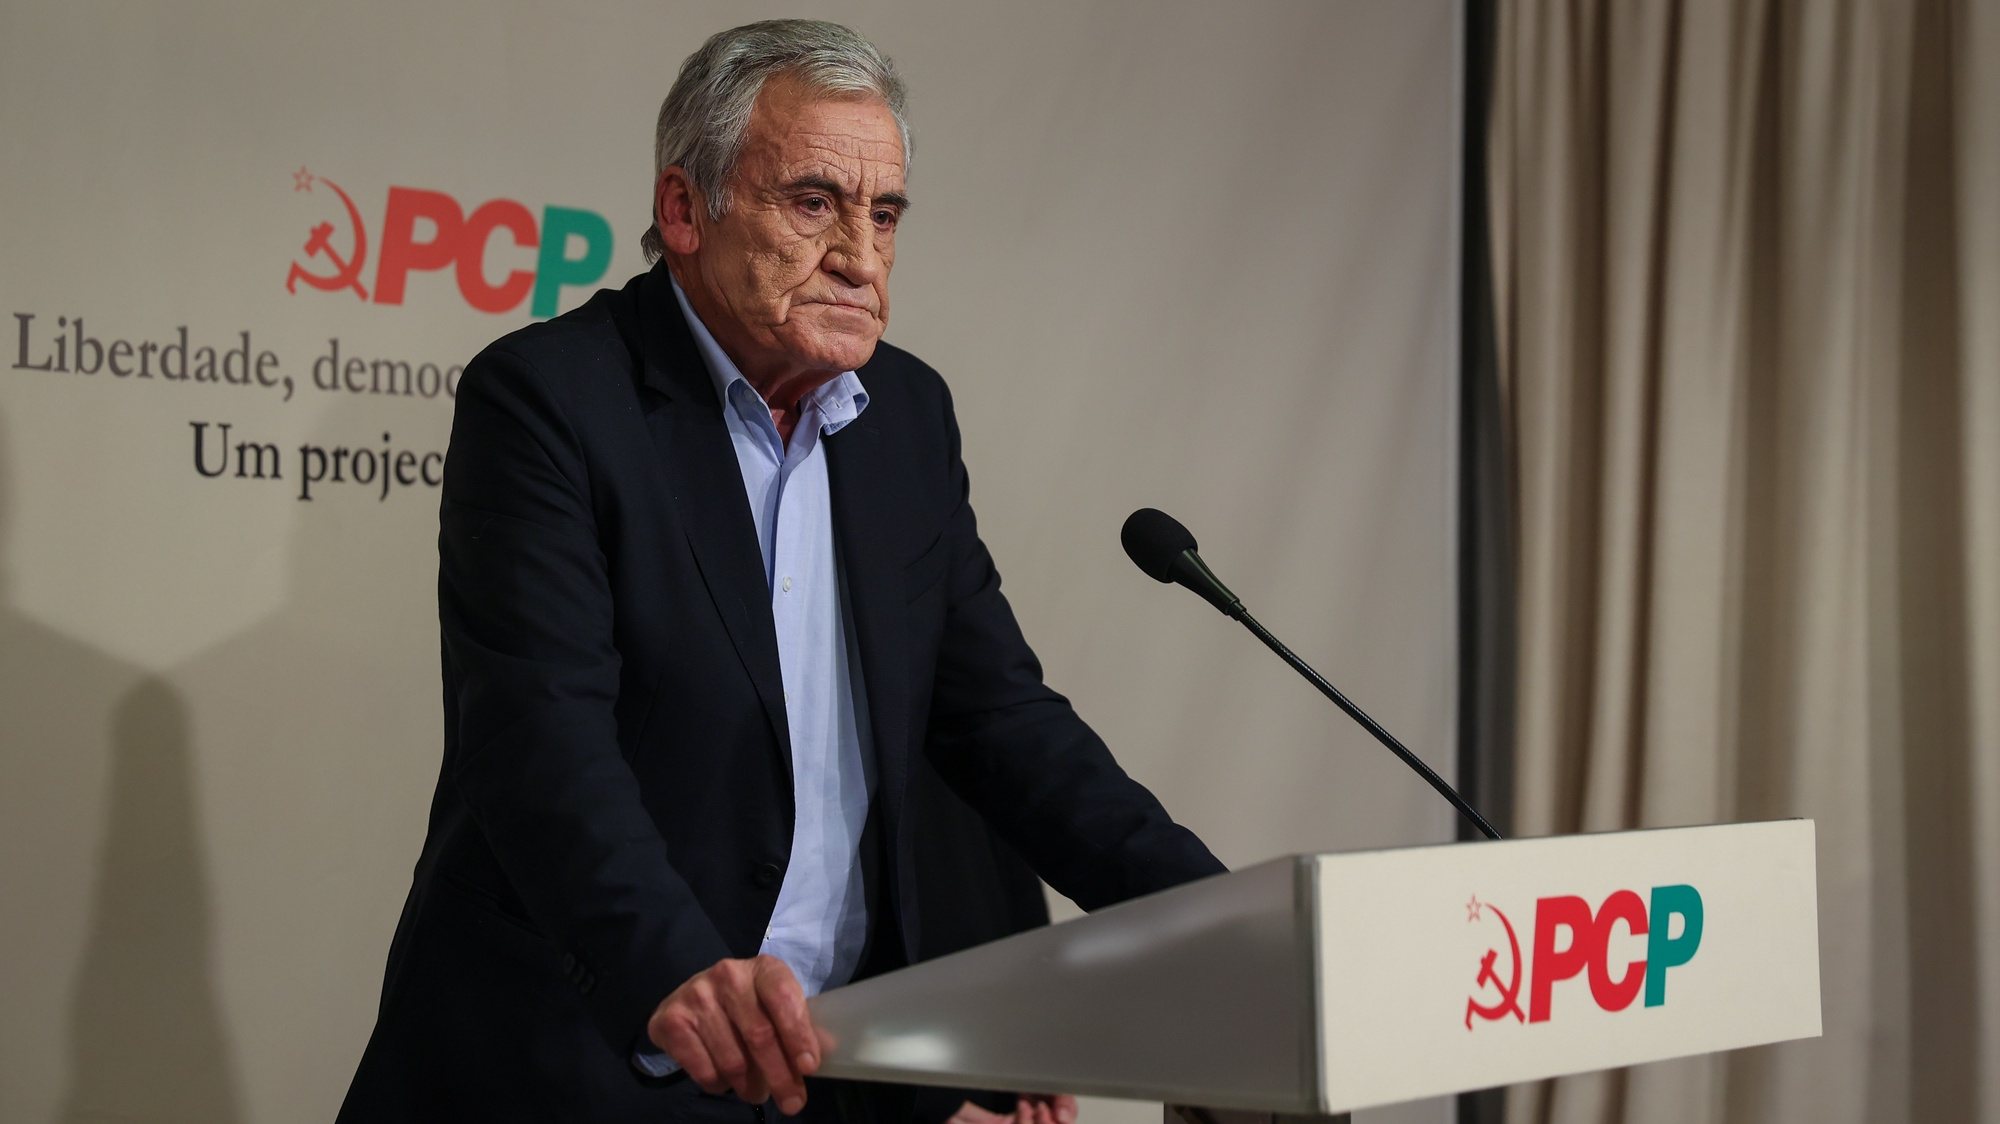 O secretário-geral do Partido Comunista Português (PCP), Jerónimo de Sousa, discursa durante a conferencia de imprensa para a apresentação das principais conclusões da reunião do Comité Central, na sede do partido, em Lisboa, 22 de novembro de 2021. RODRIGO ANTUNES/LUSA